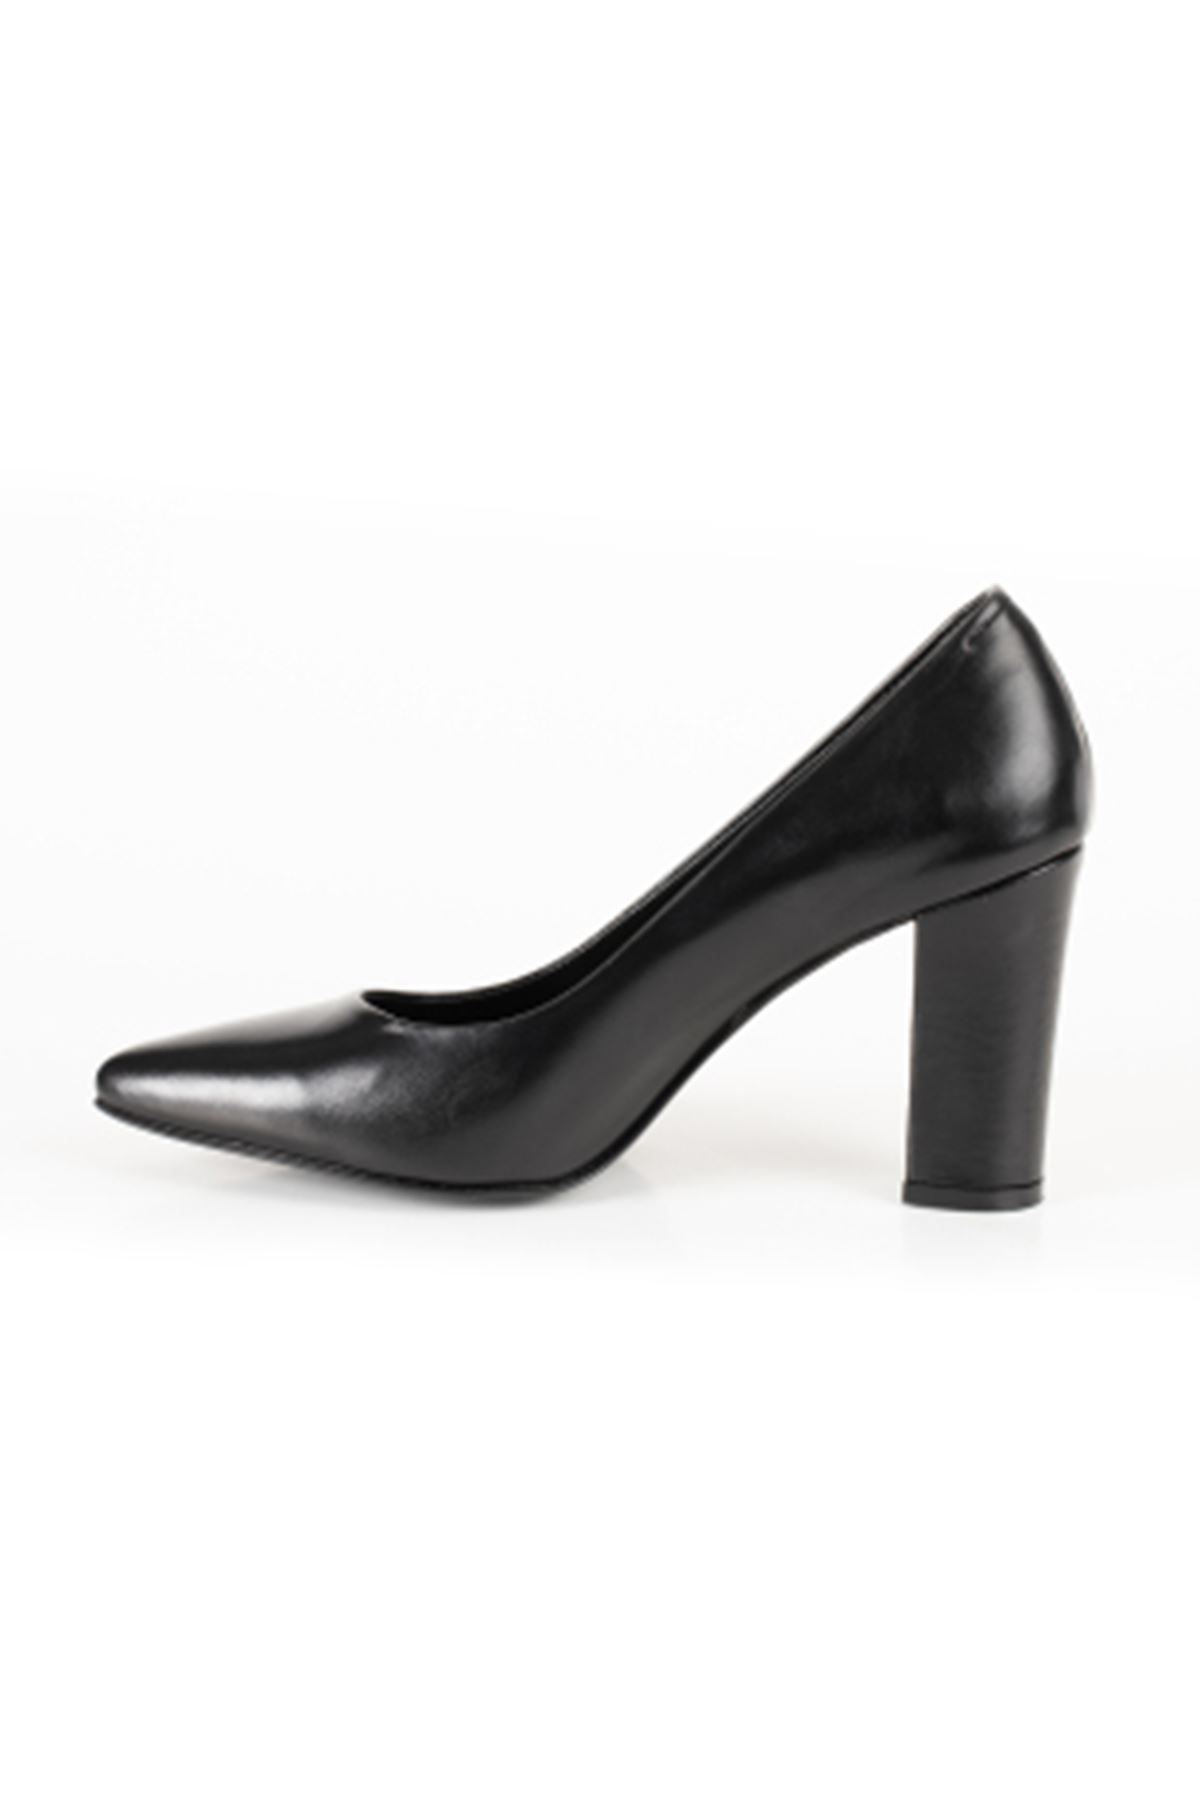 Hakiki Deri Kadın Deri Topuklu Ayakkabı 1786 Gate Shoes -Siyah